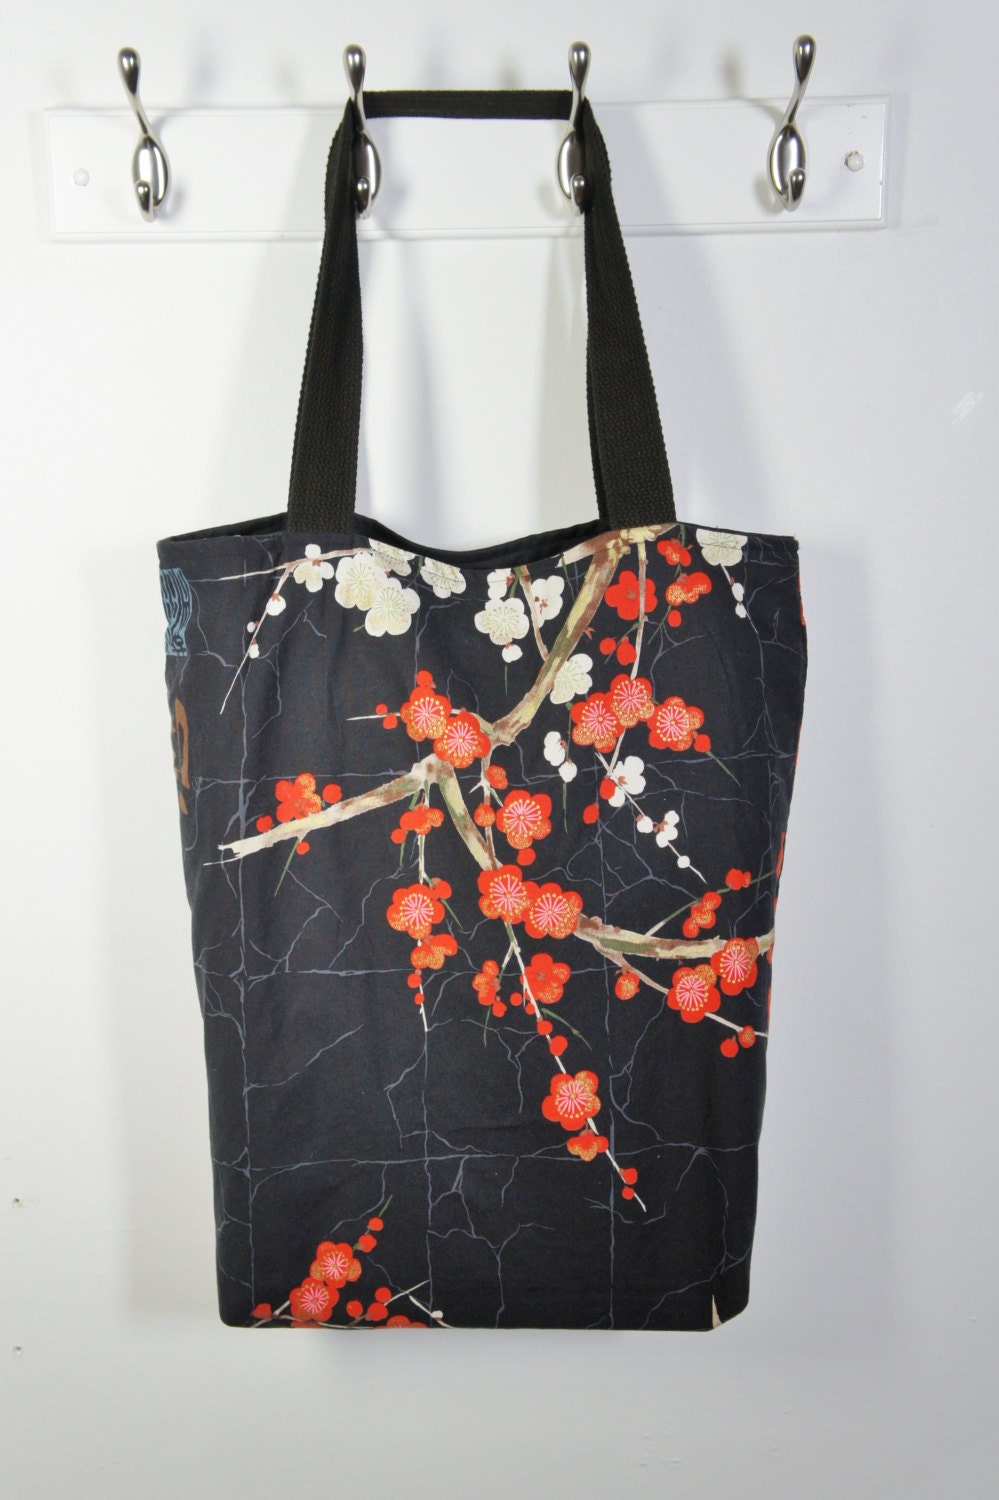 Cherry blossom handbag Tote bag with flowers beach bag